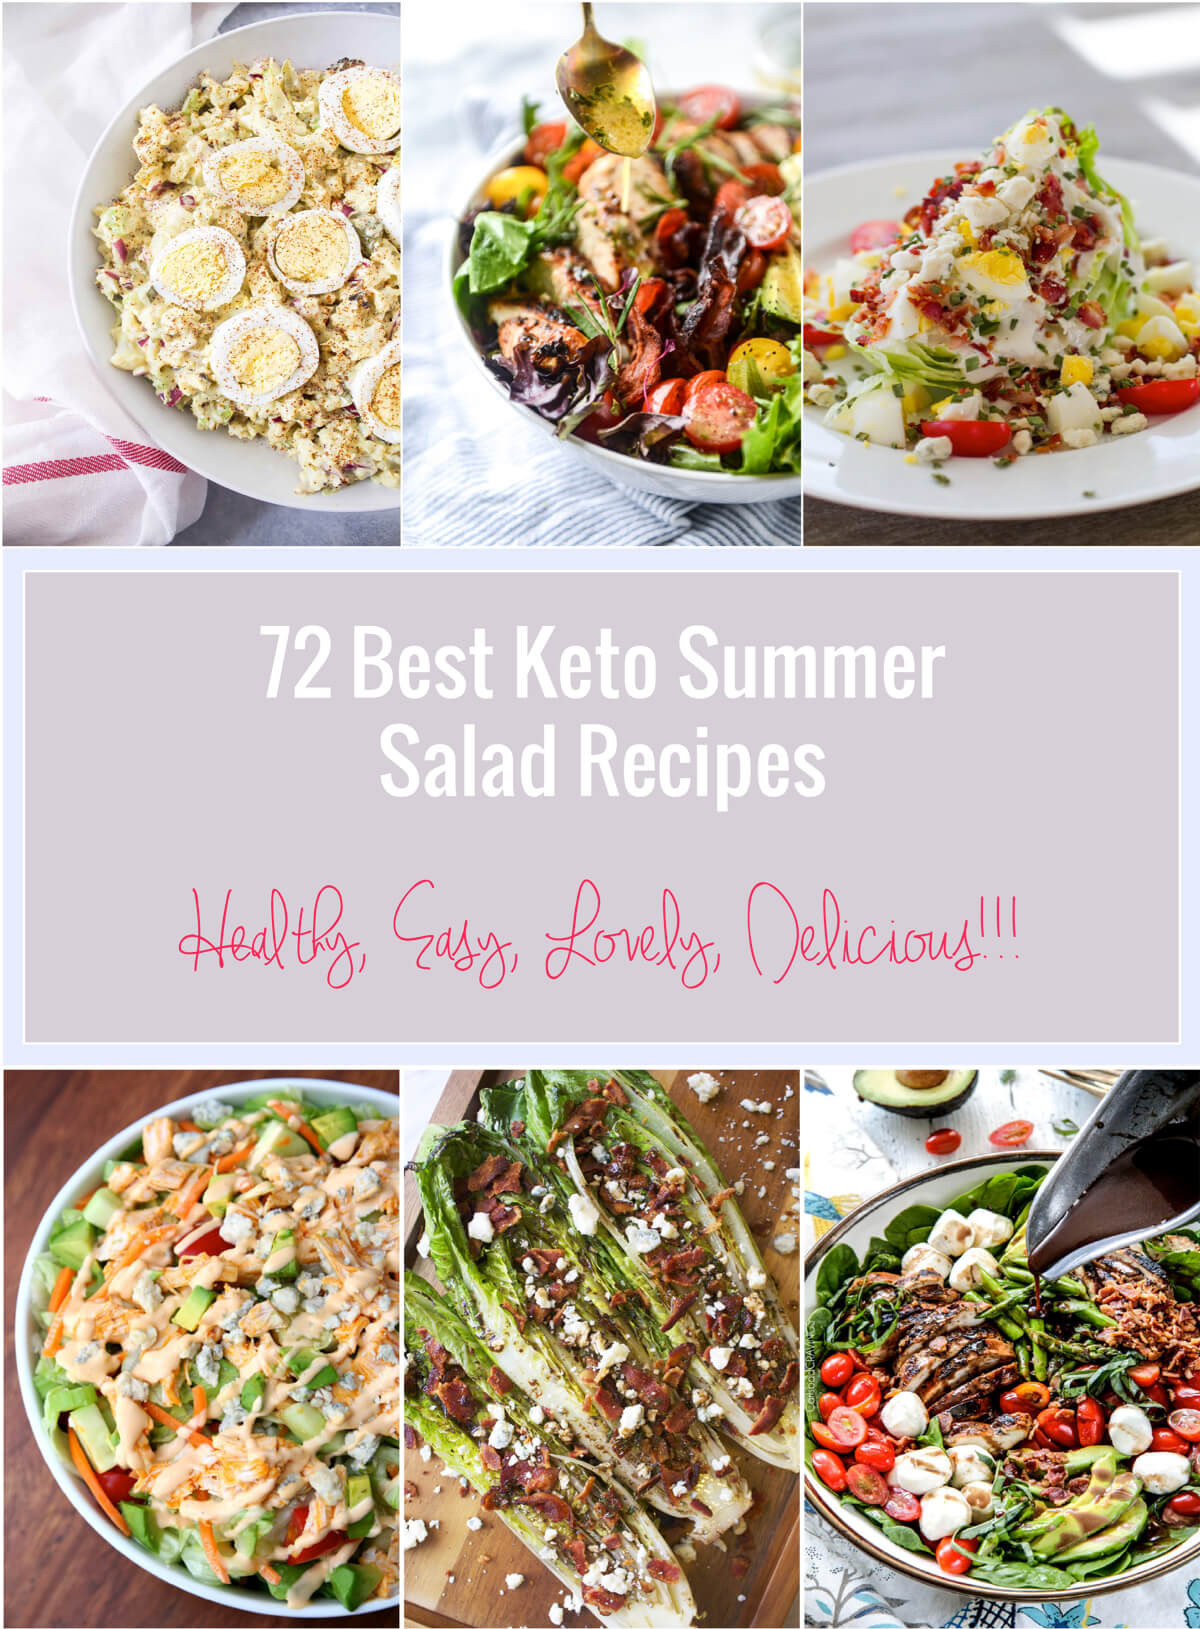 Summer Keto Salad Recipes
 72 Best Keto Summer Salad Recipes